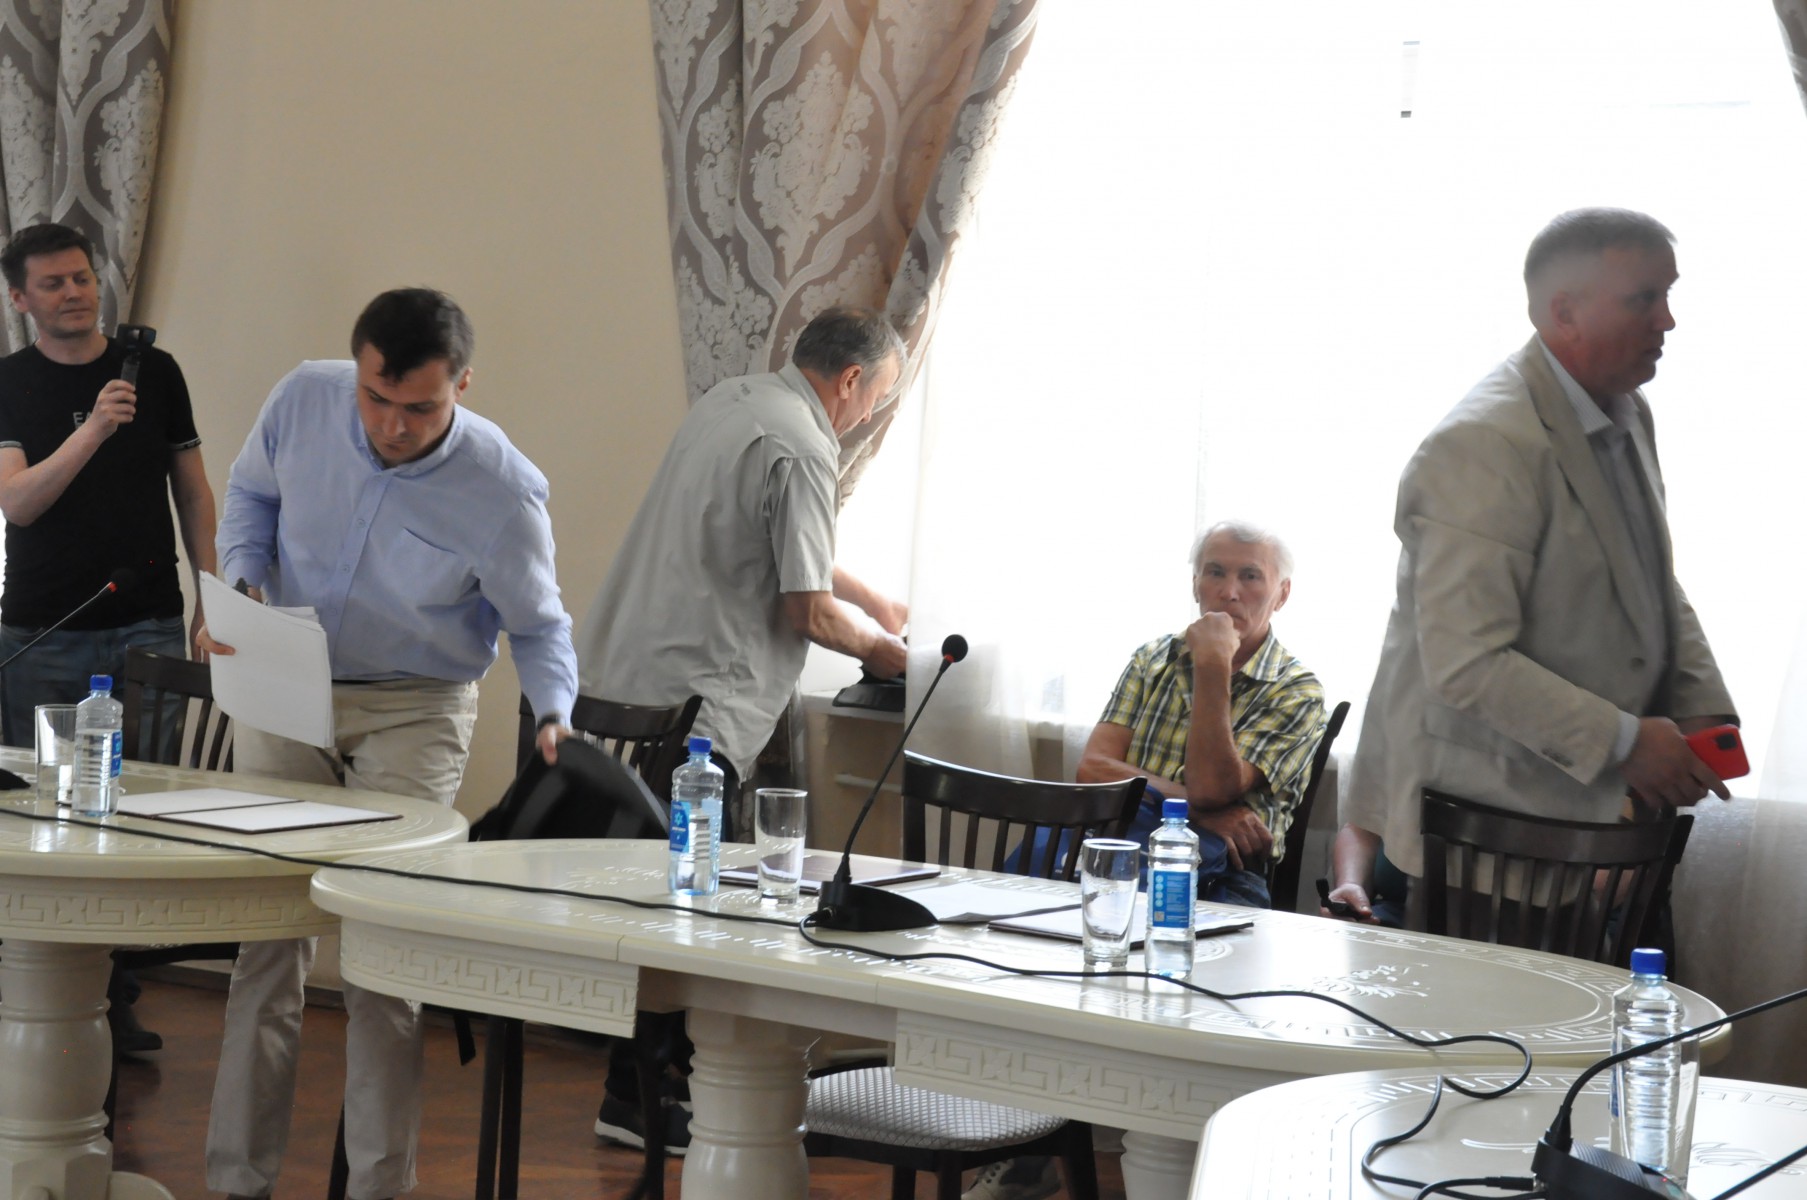 Шесть депутатов коалиции, как только Дума пошла не по их сценарию, решили покинуть заседание. Фото Екатерины Городко